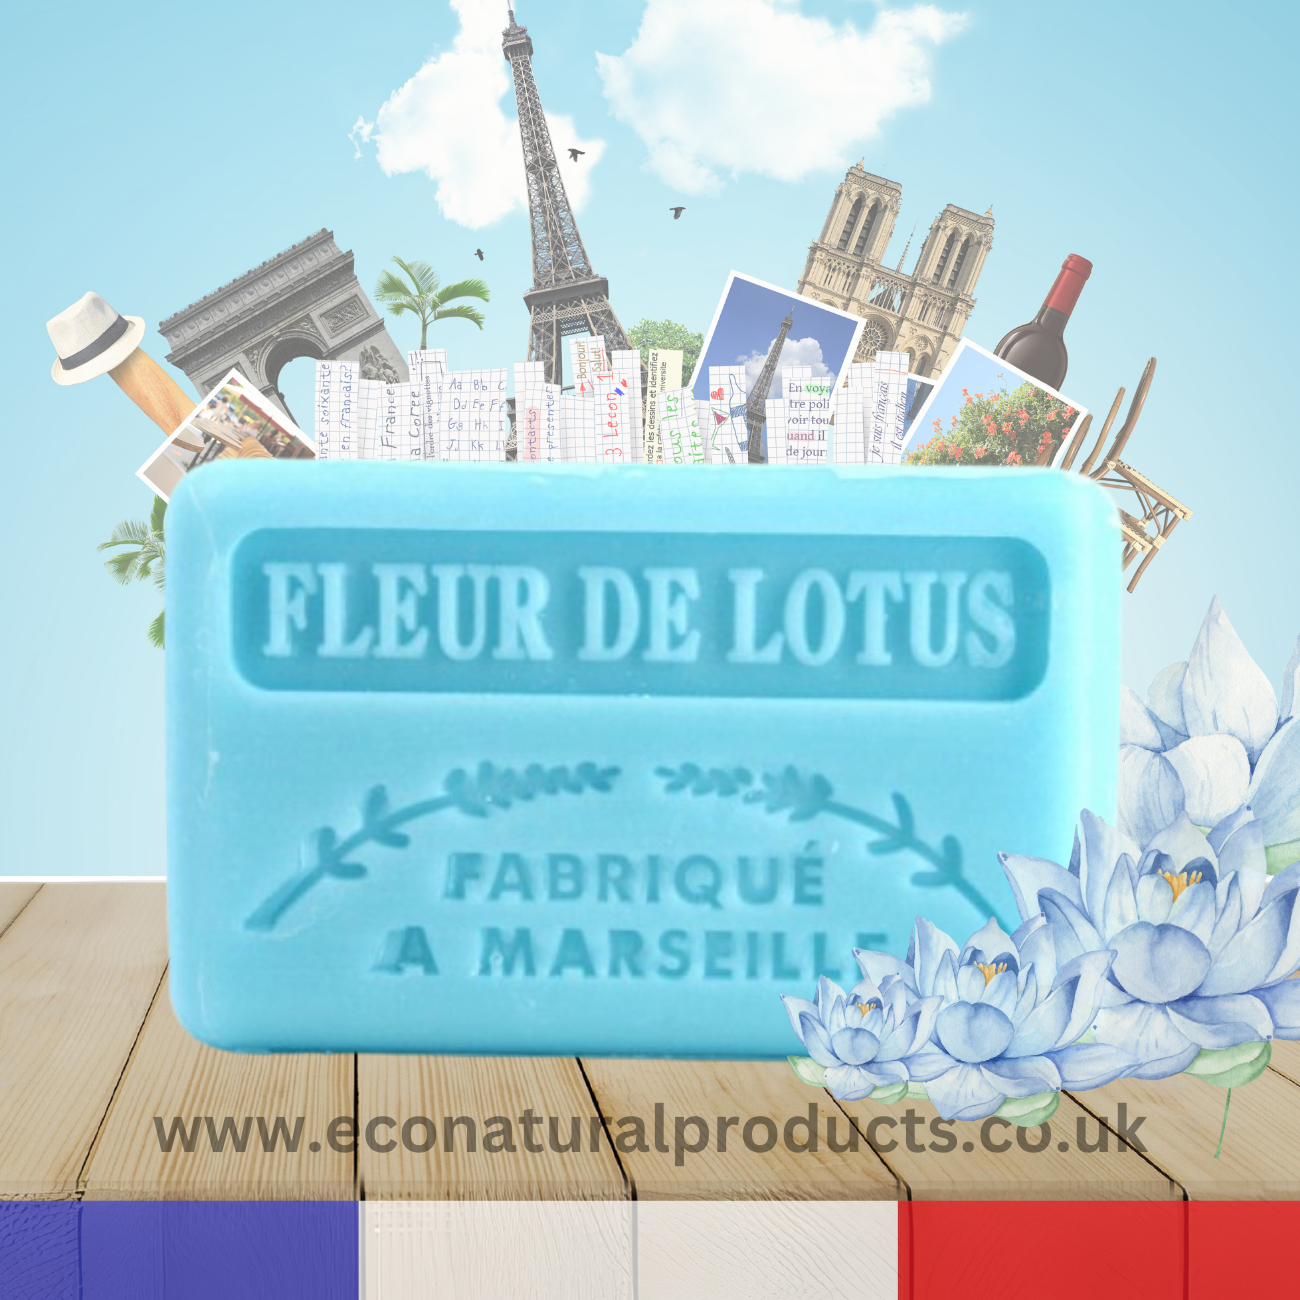 French Marseille Soap Fleur de Lotus (Lotus Flower) 125g